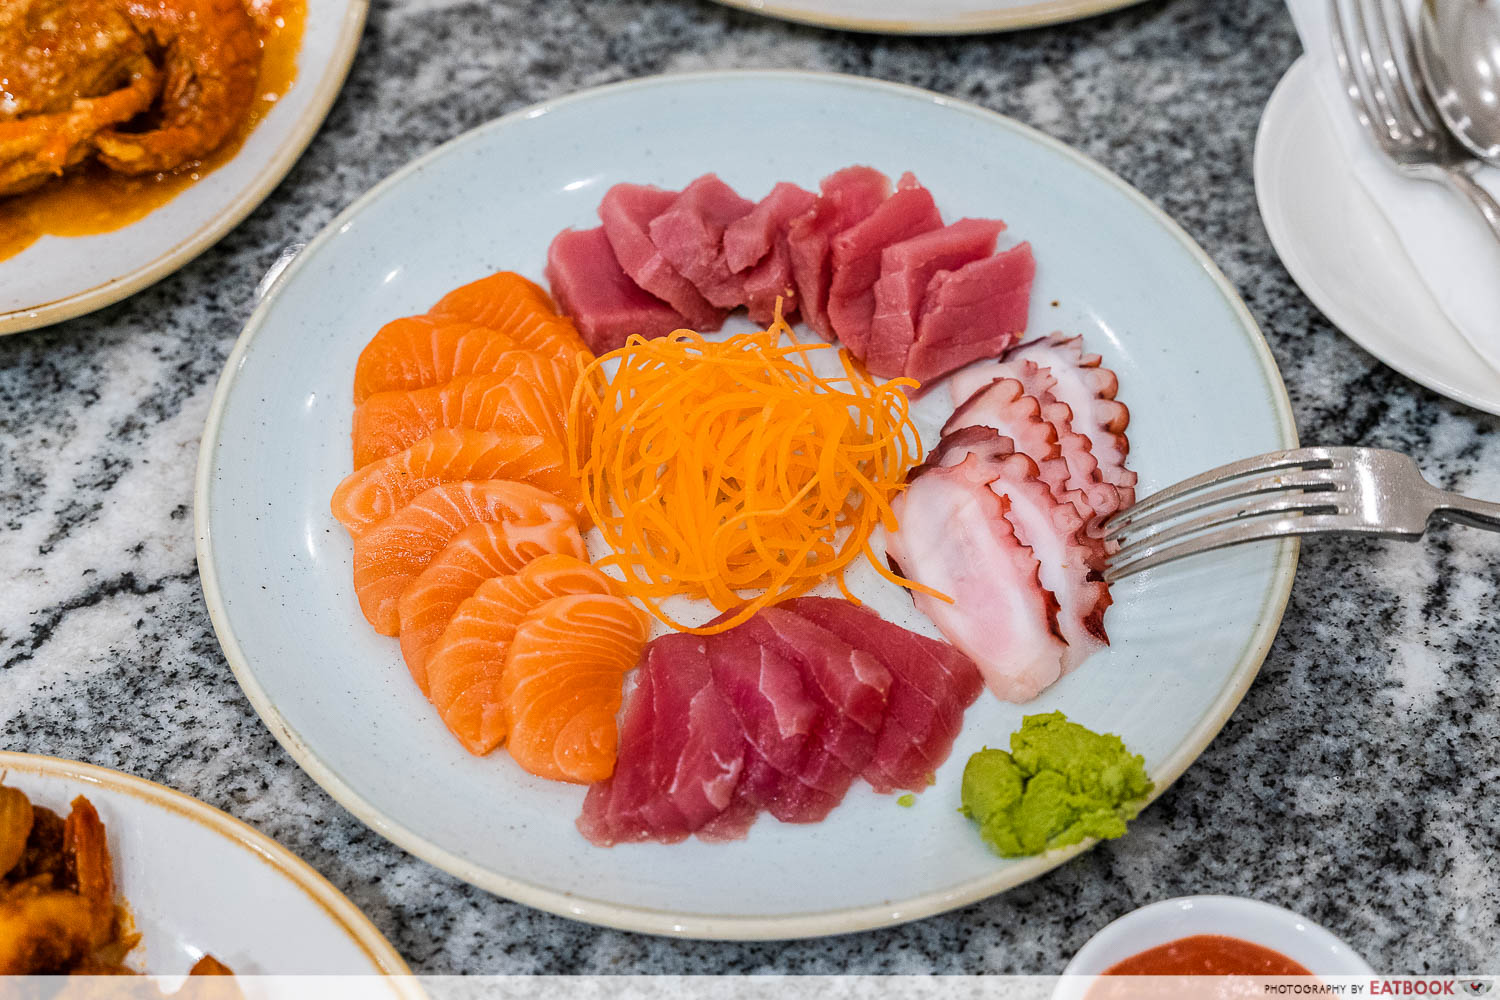 paradox singapore - sashimi